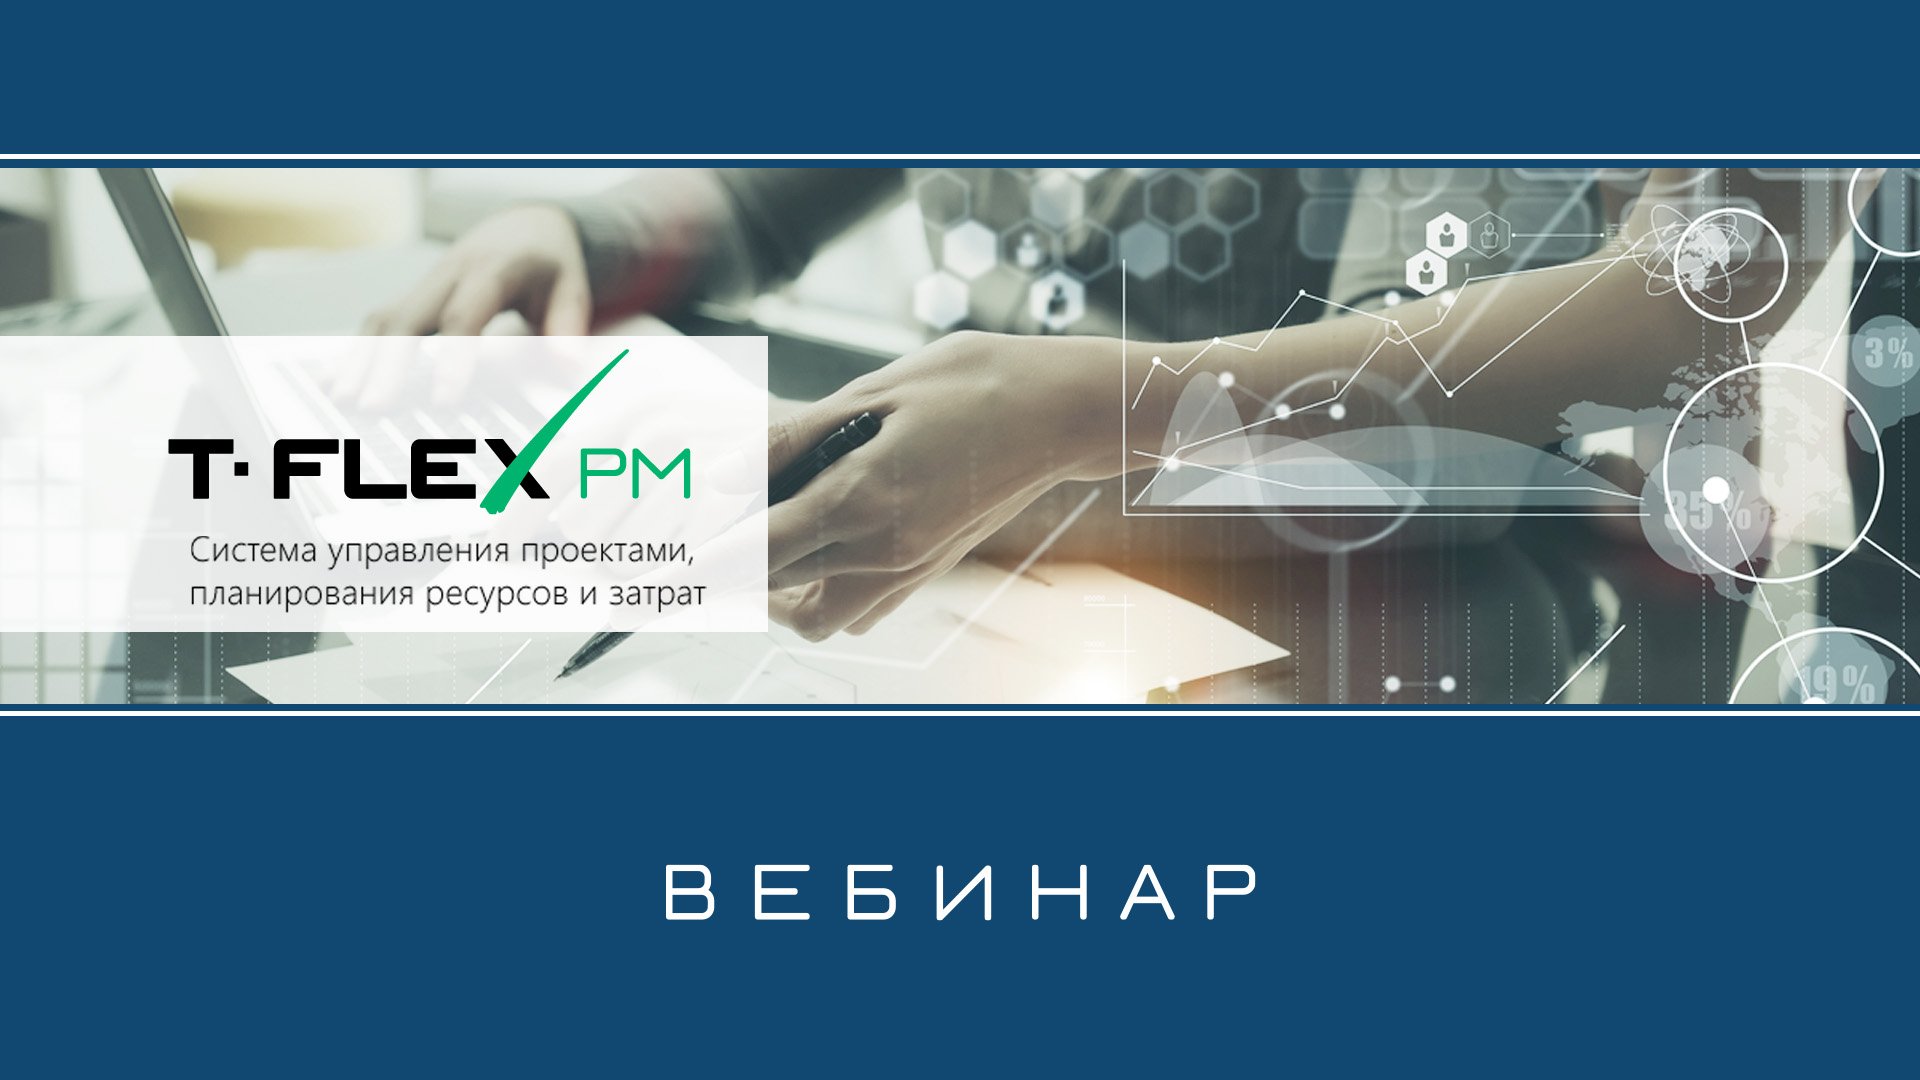 T-FLEX Управление проектами – Обзор системы